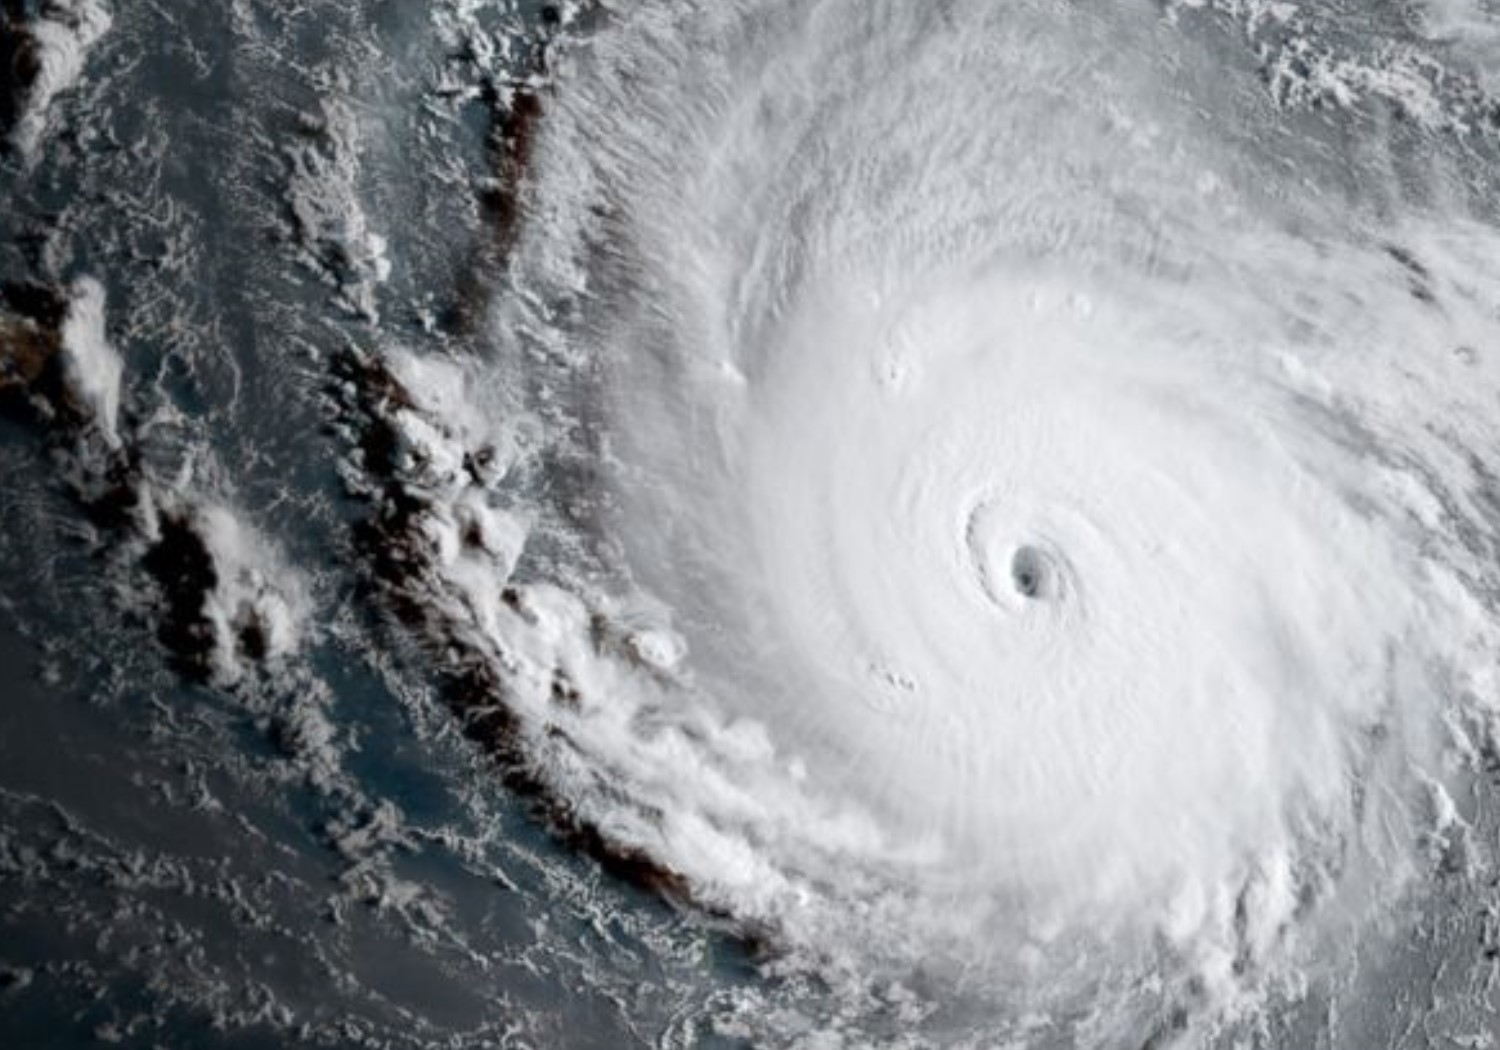 Image of hurricane Irma